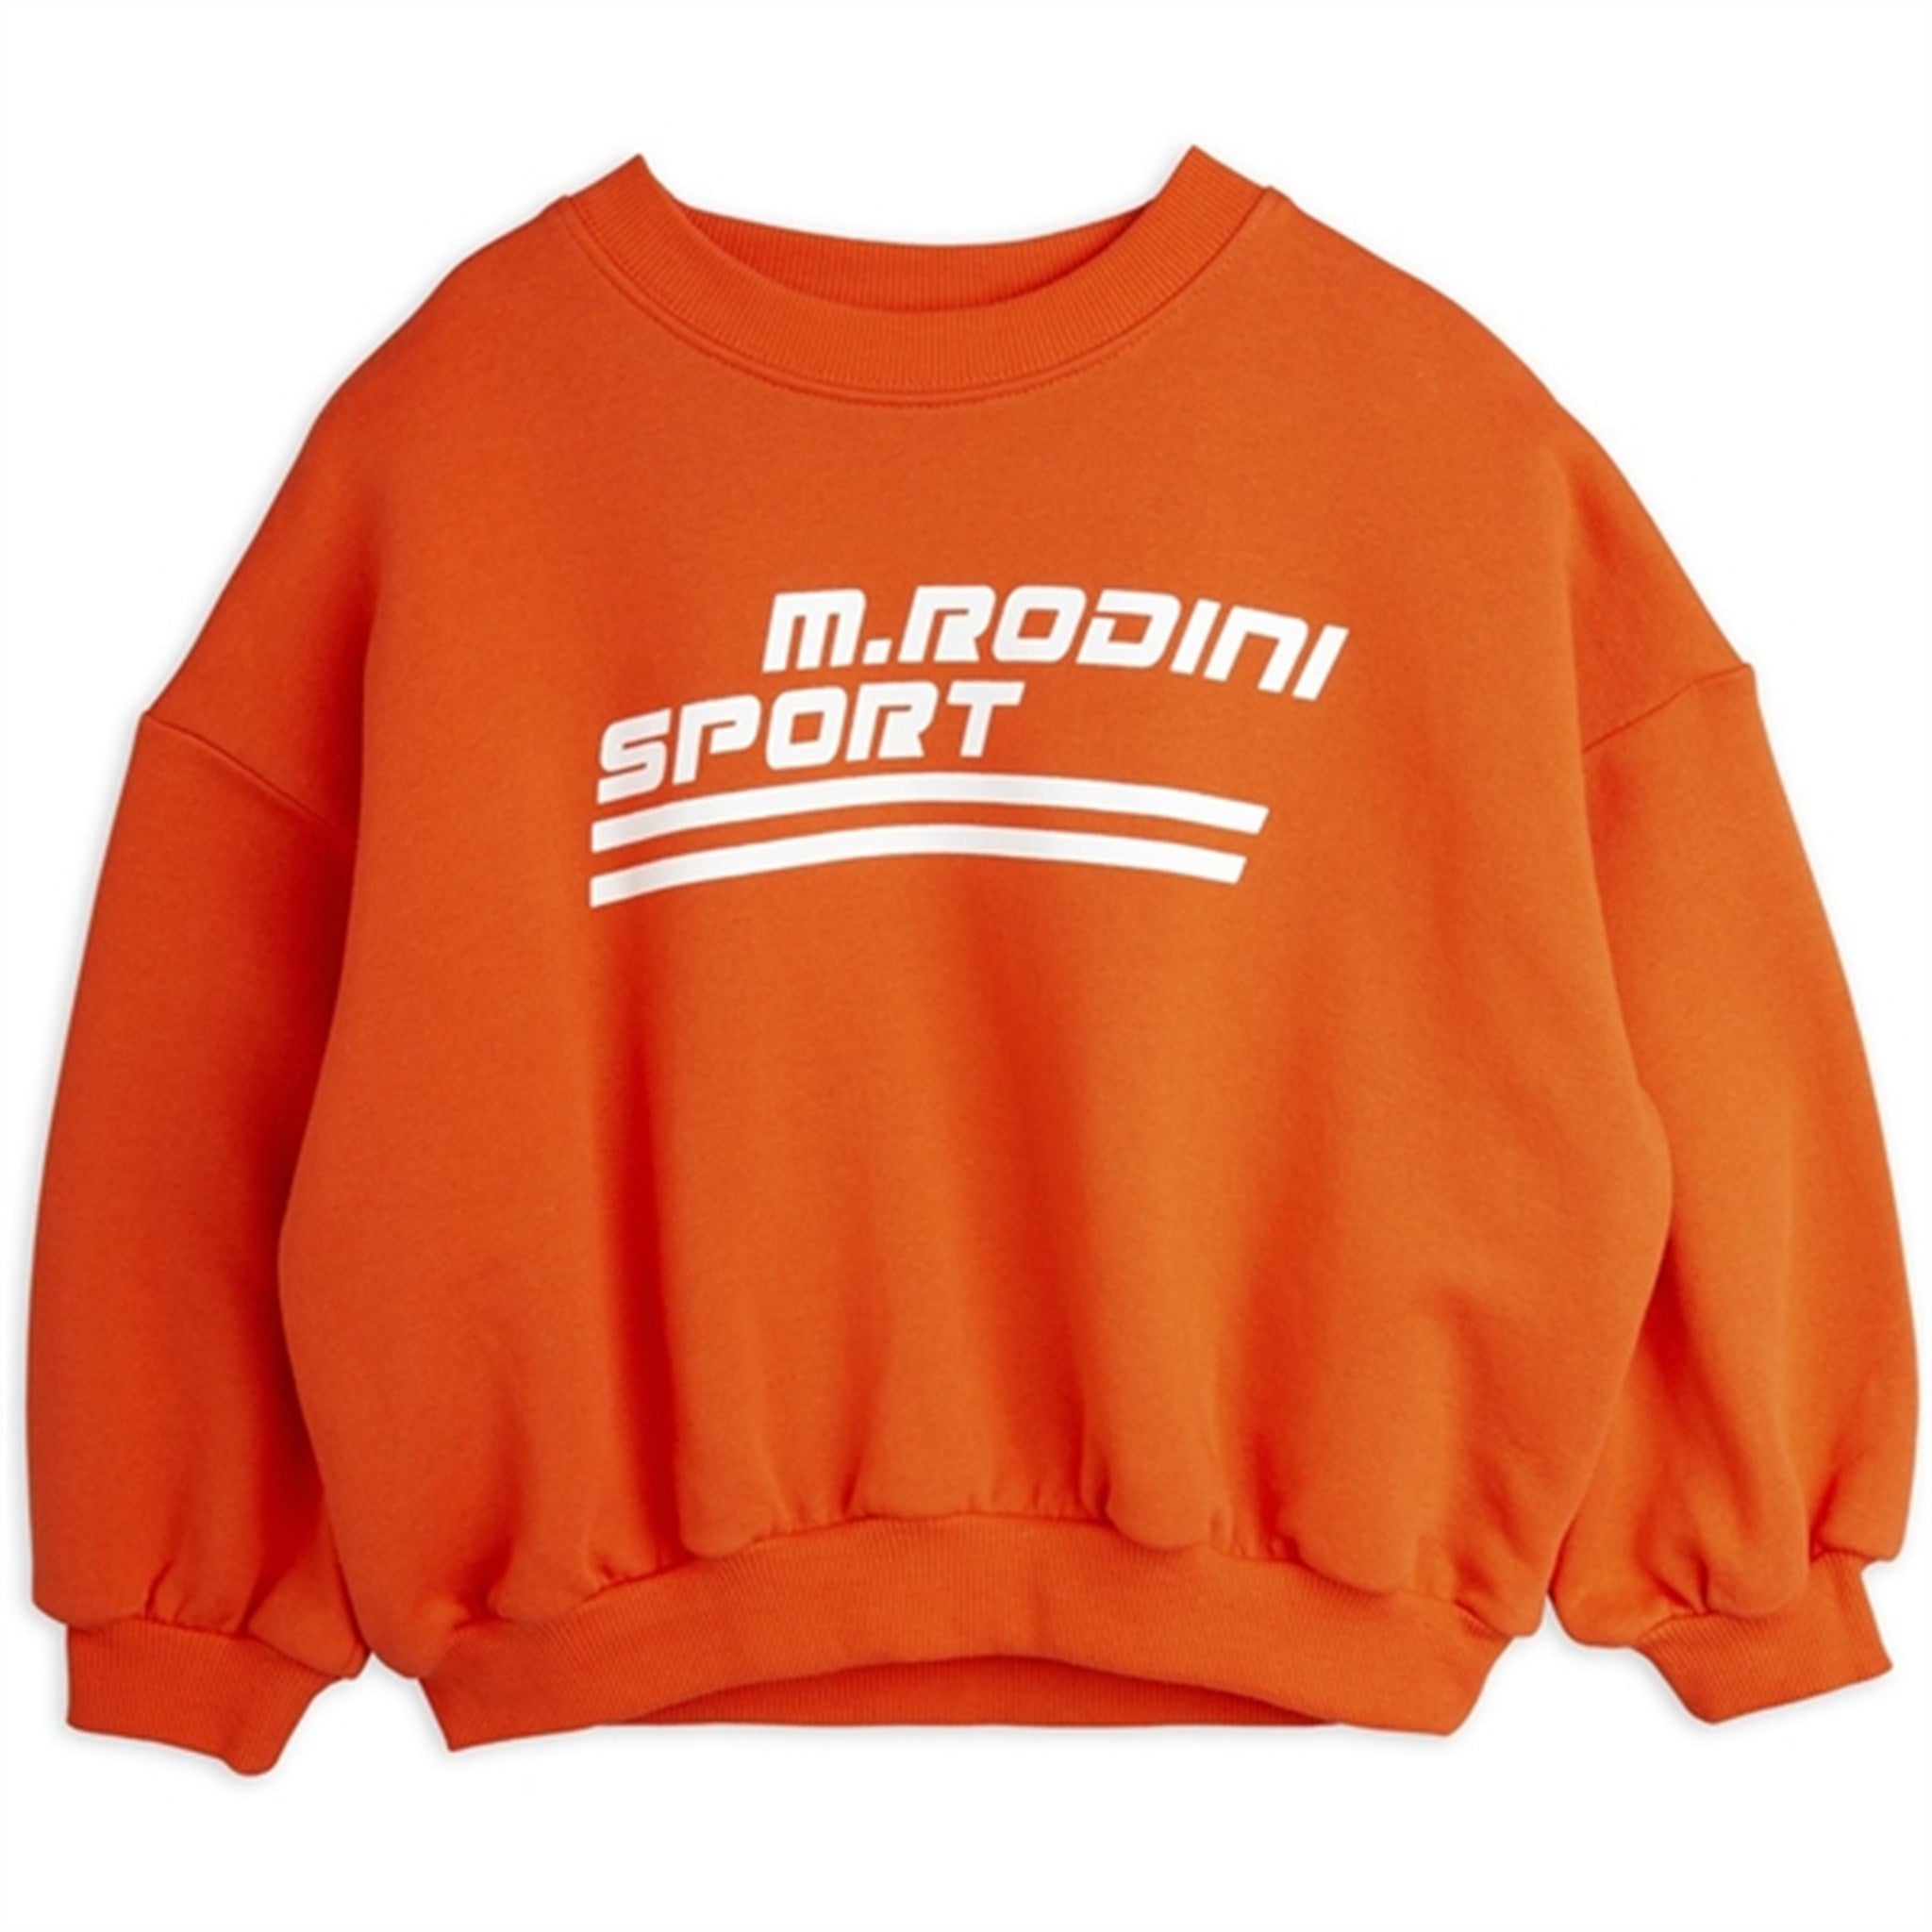 Mini Rodini Red M Rodini Sport Sp Sweatshirt